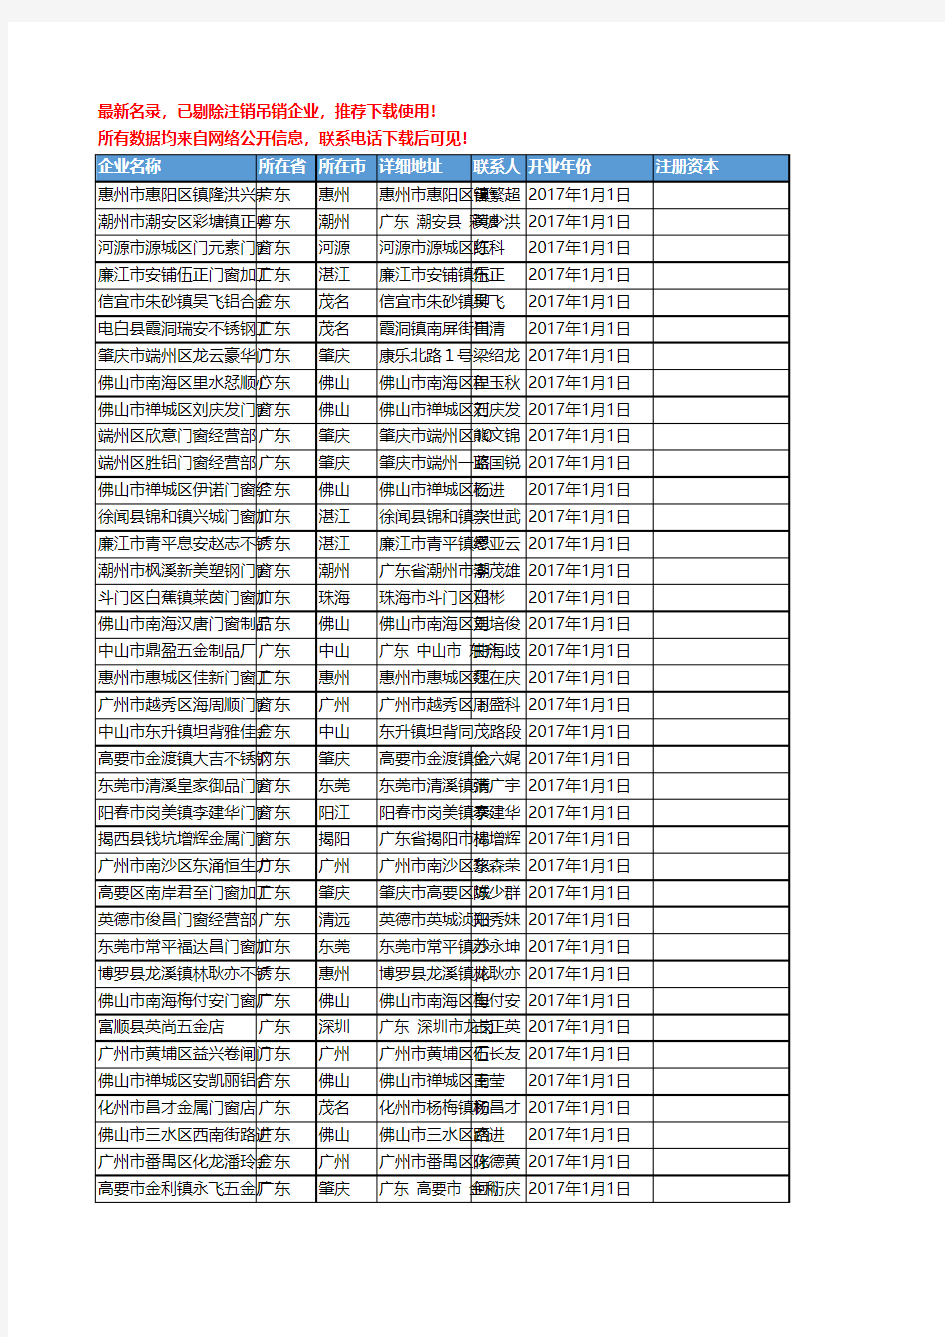 【独家数据】2018新版广东省门窗工商企业名录黄页大全10430家